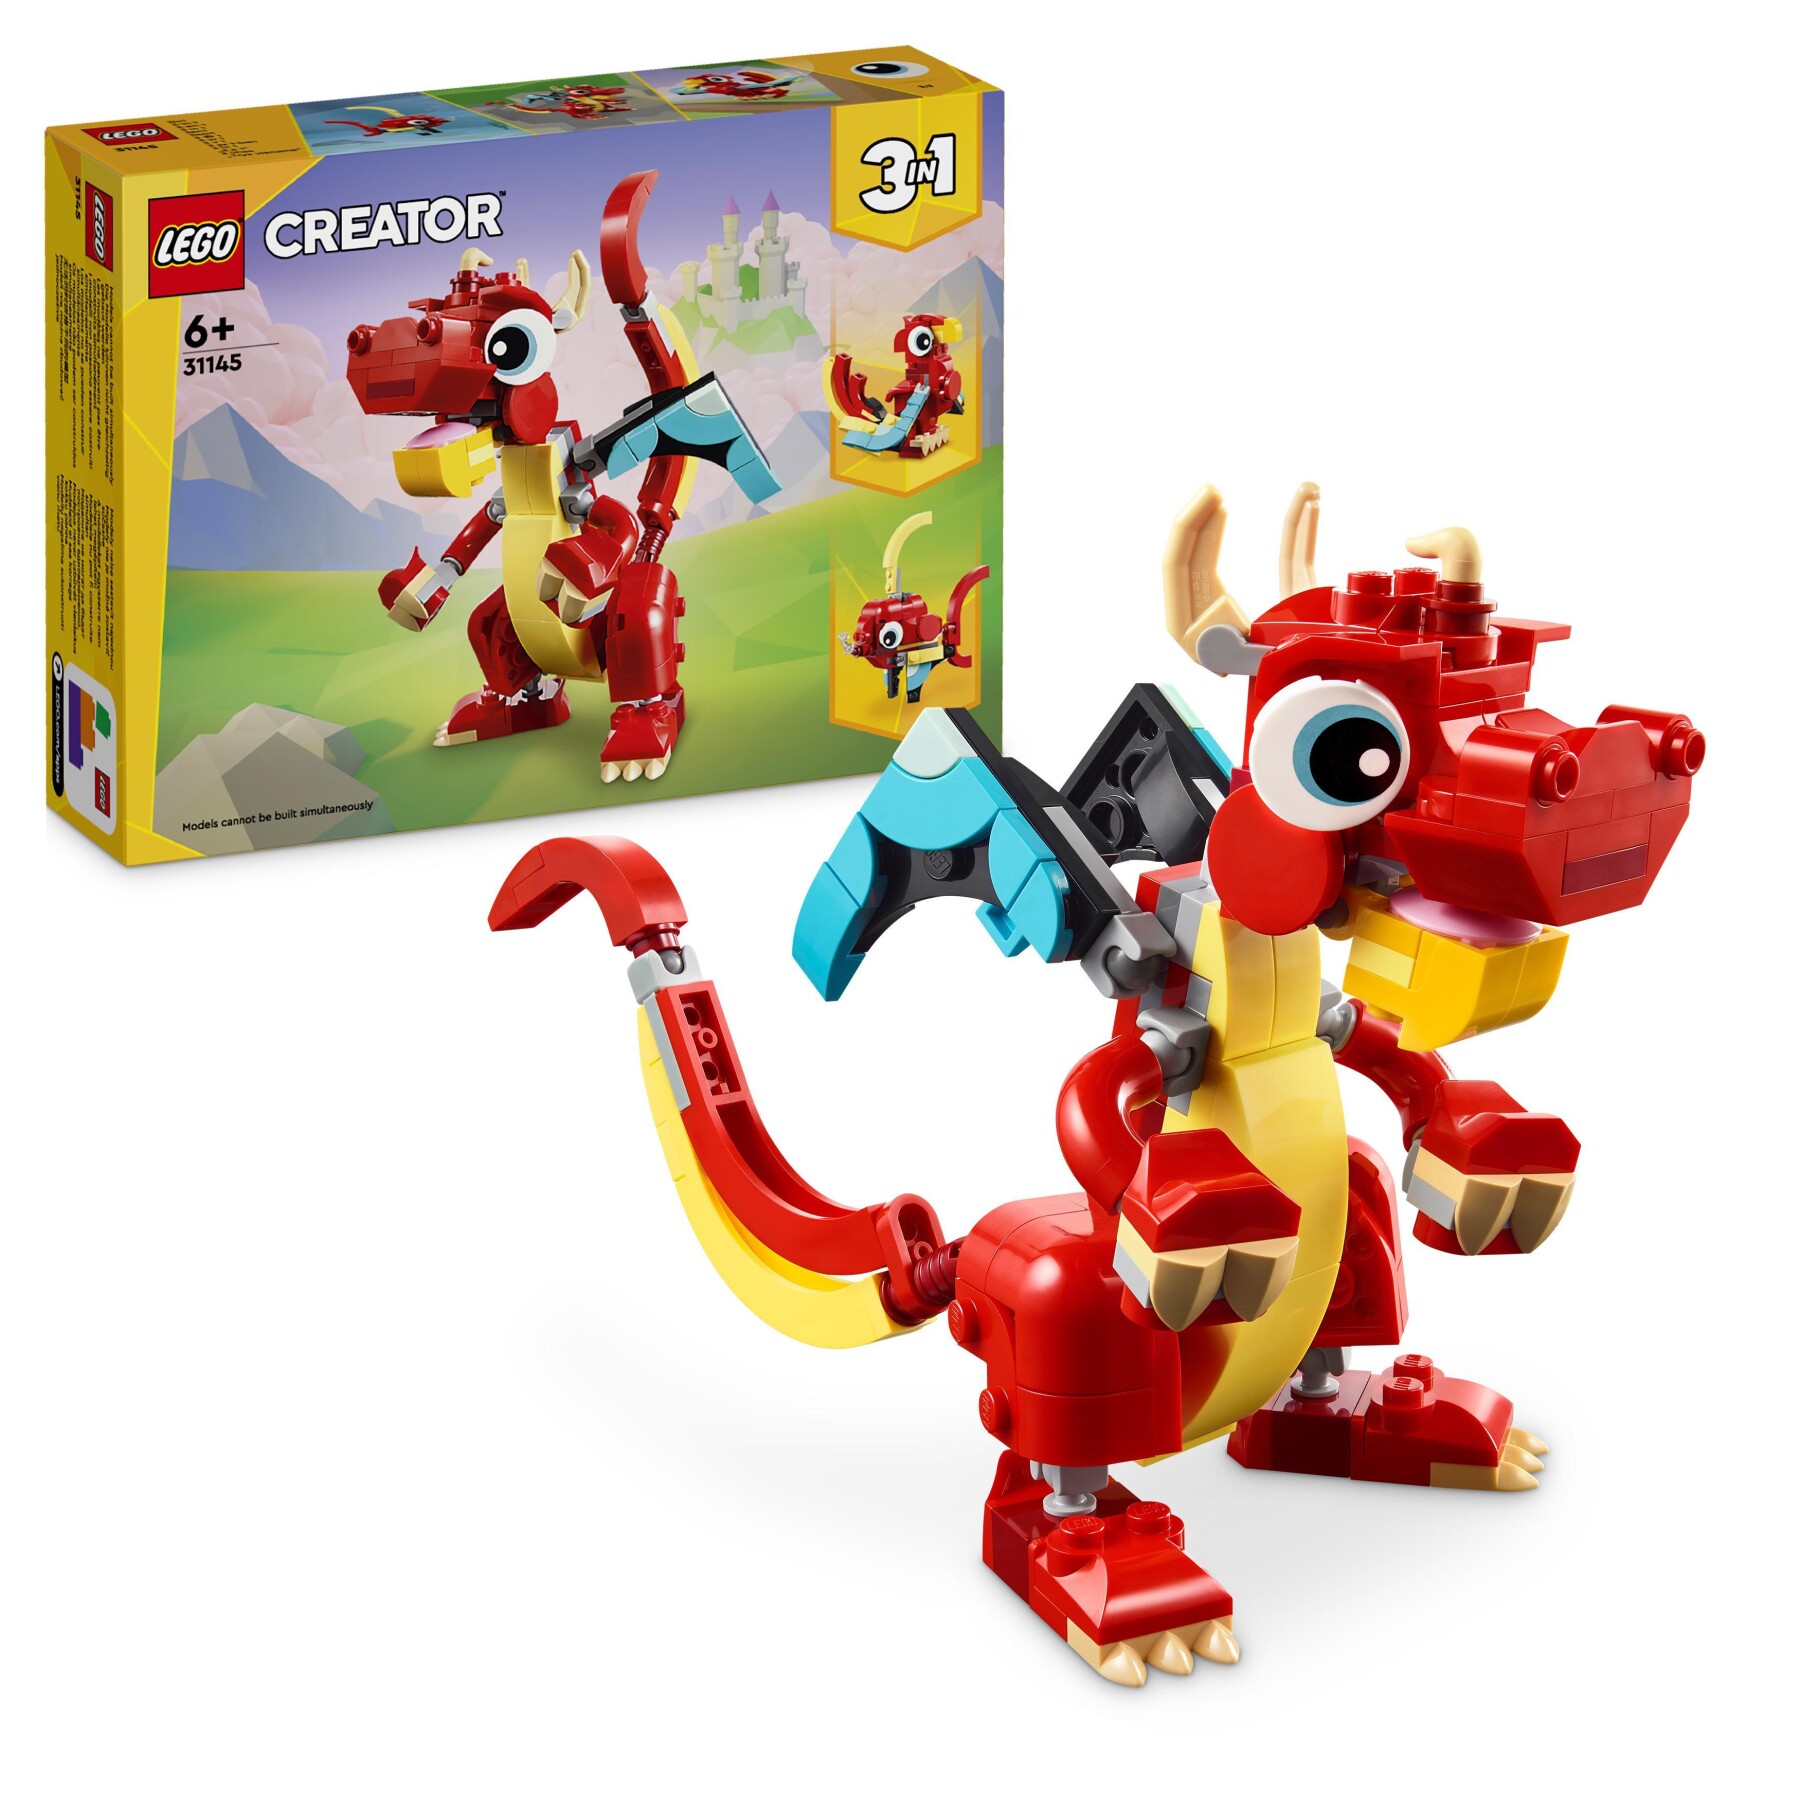 LEGO Creator 31145 3in1 Drago Rosso, Giochi per Bambini di 6+ Anni